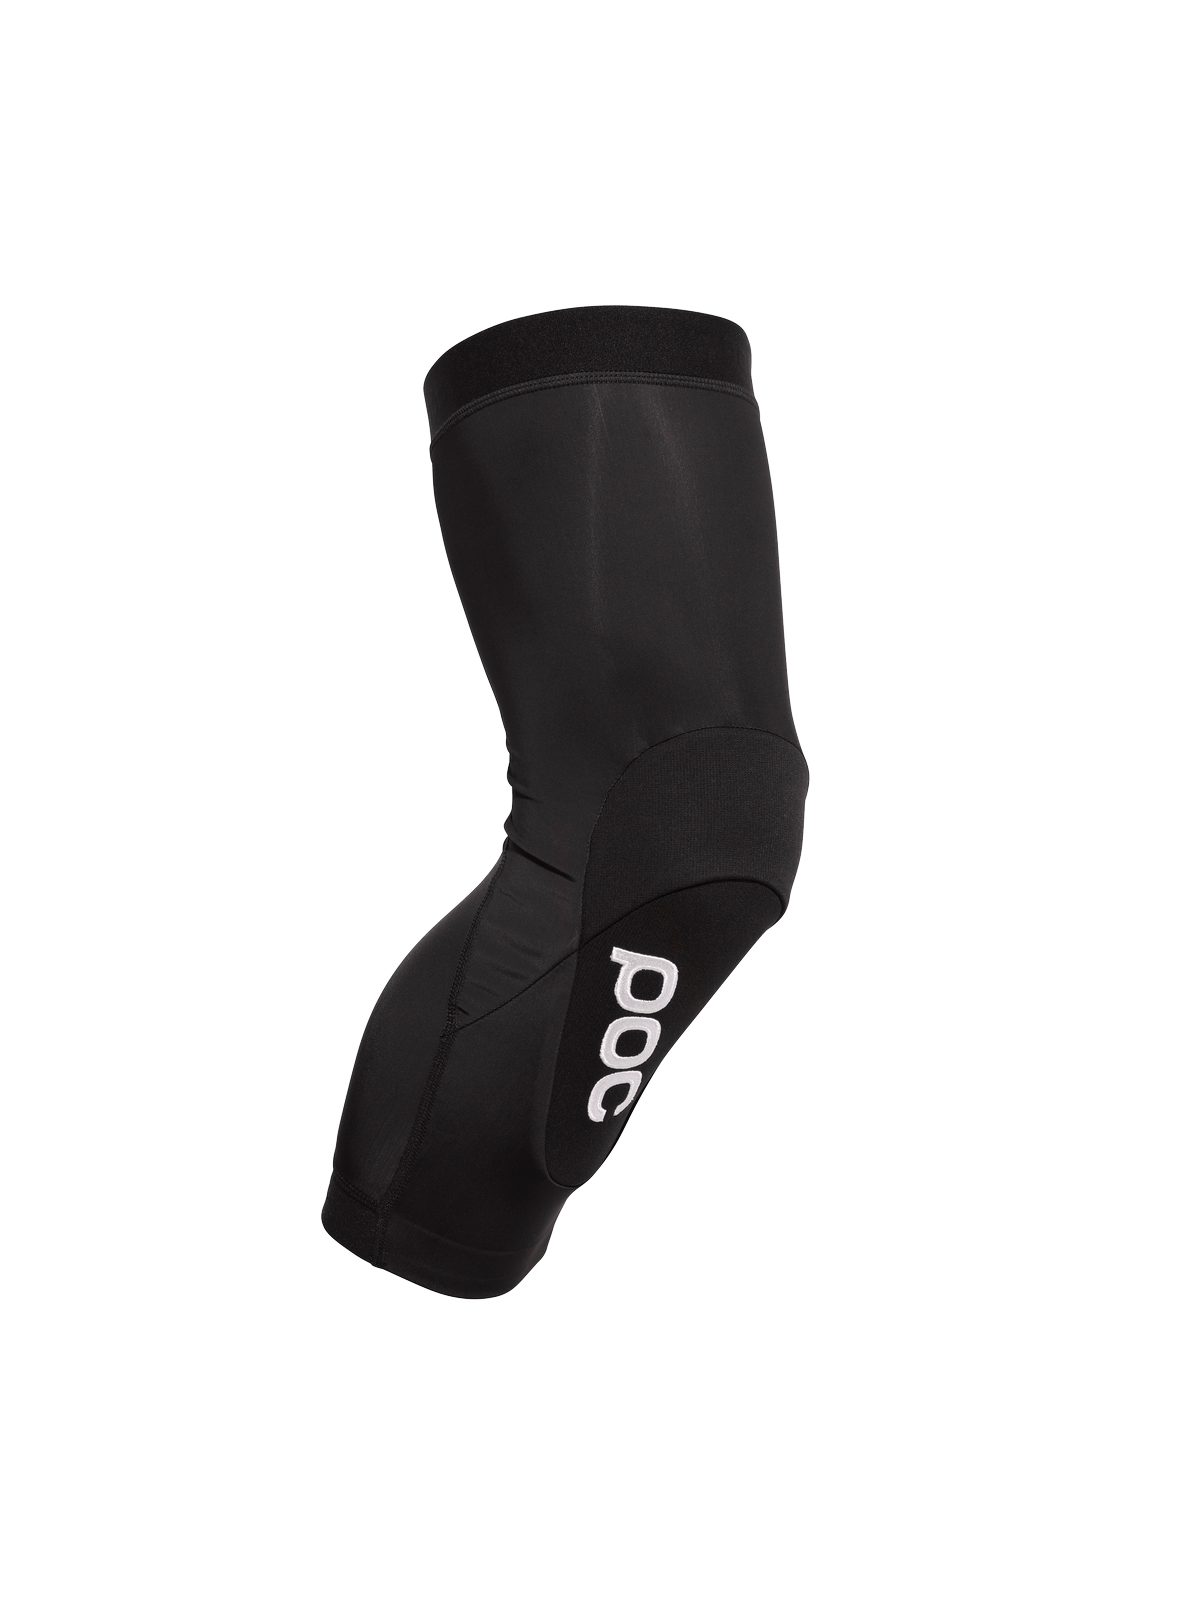 Ochraniacze na kolana POC VPD AIR LEG - czarny